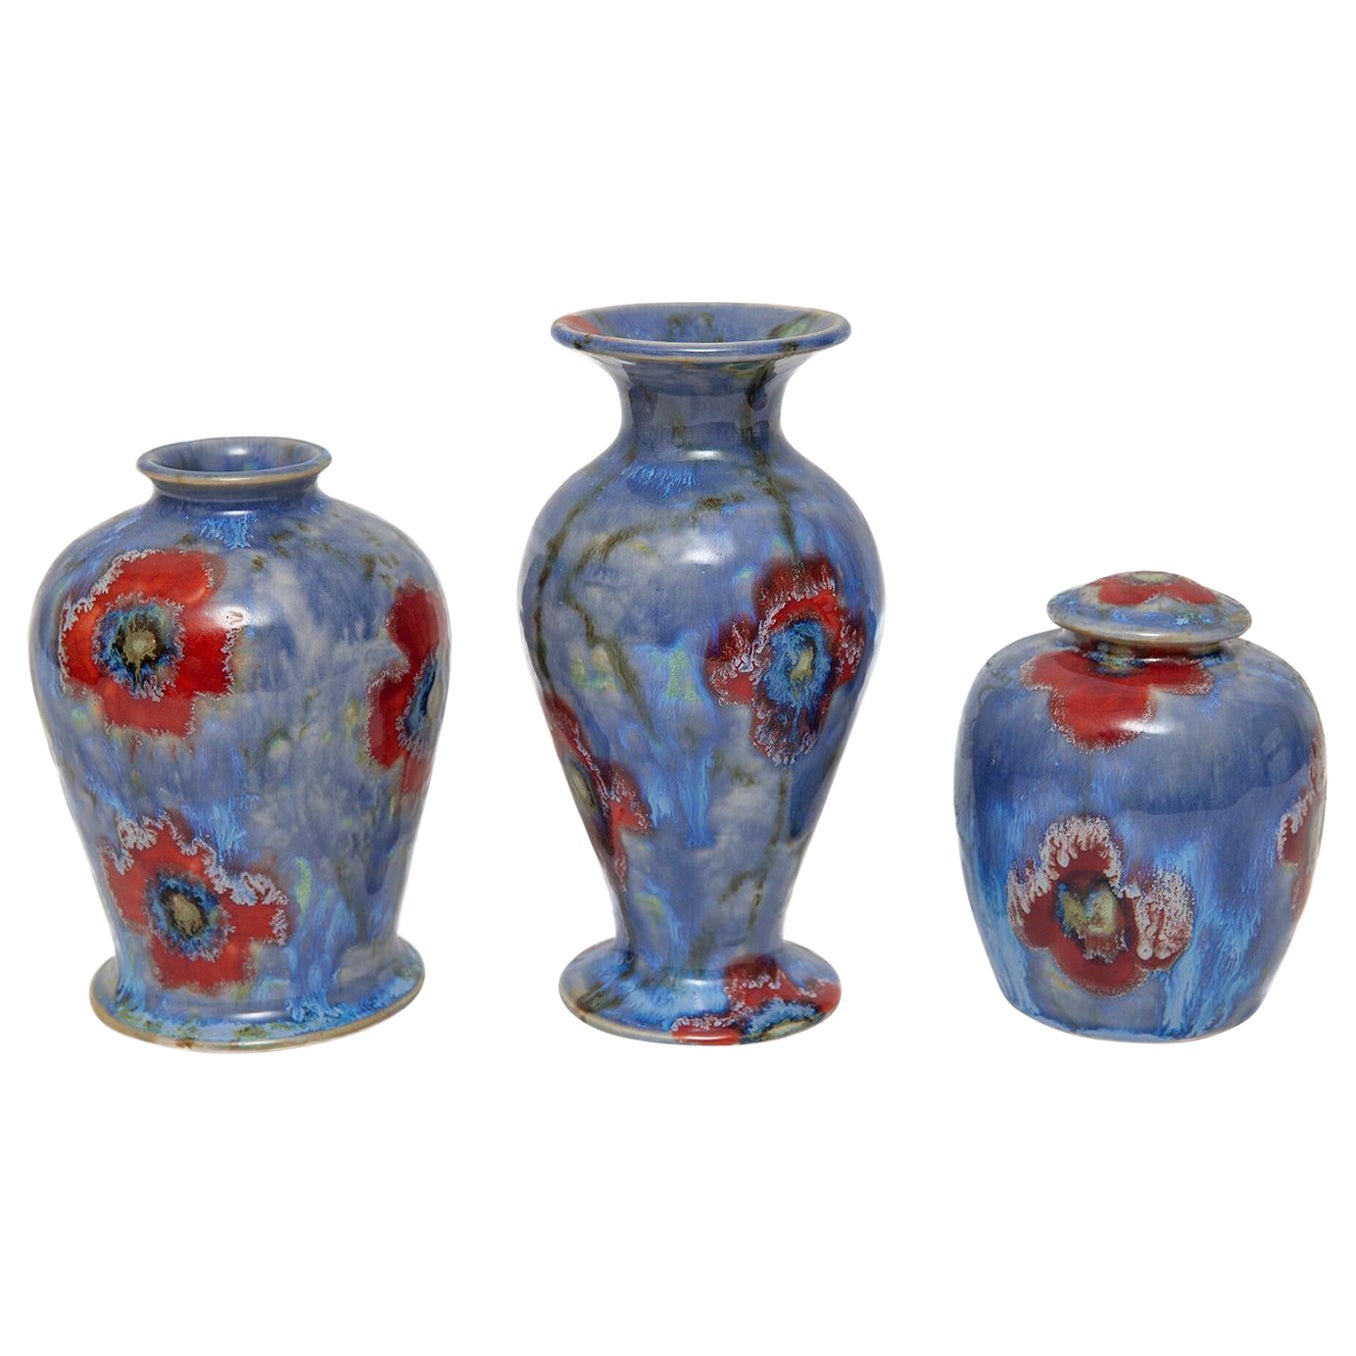 Ensemble de 3 vases anita harris à motifs cobridge, coquelicot et glace peints à la main